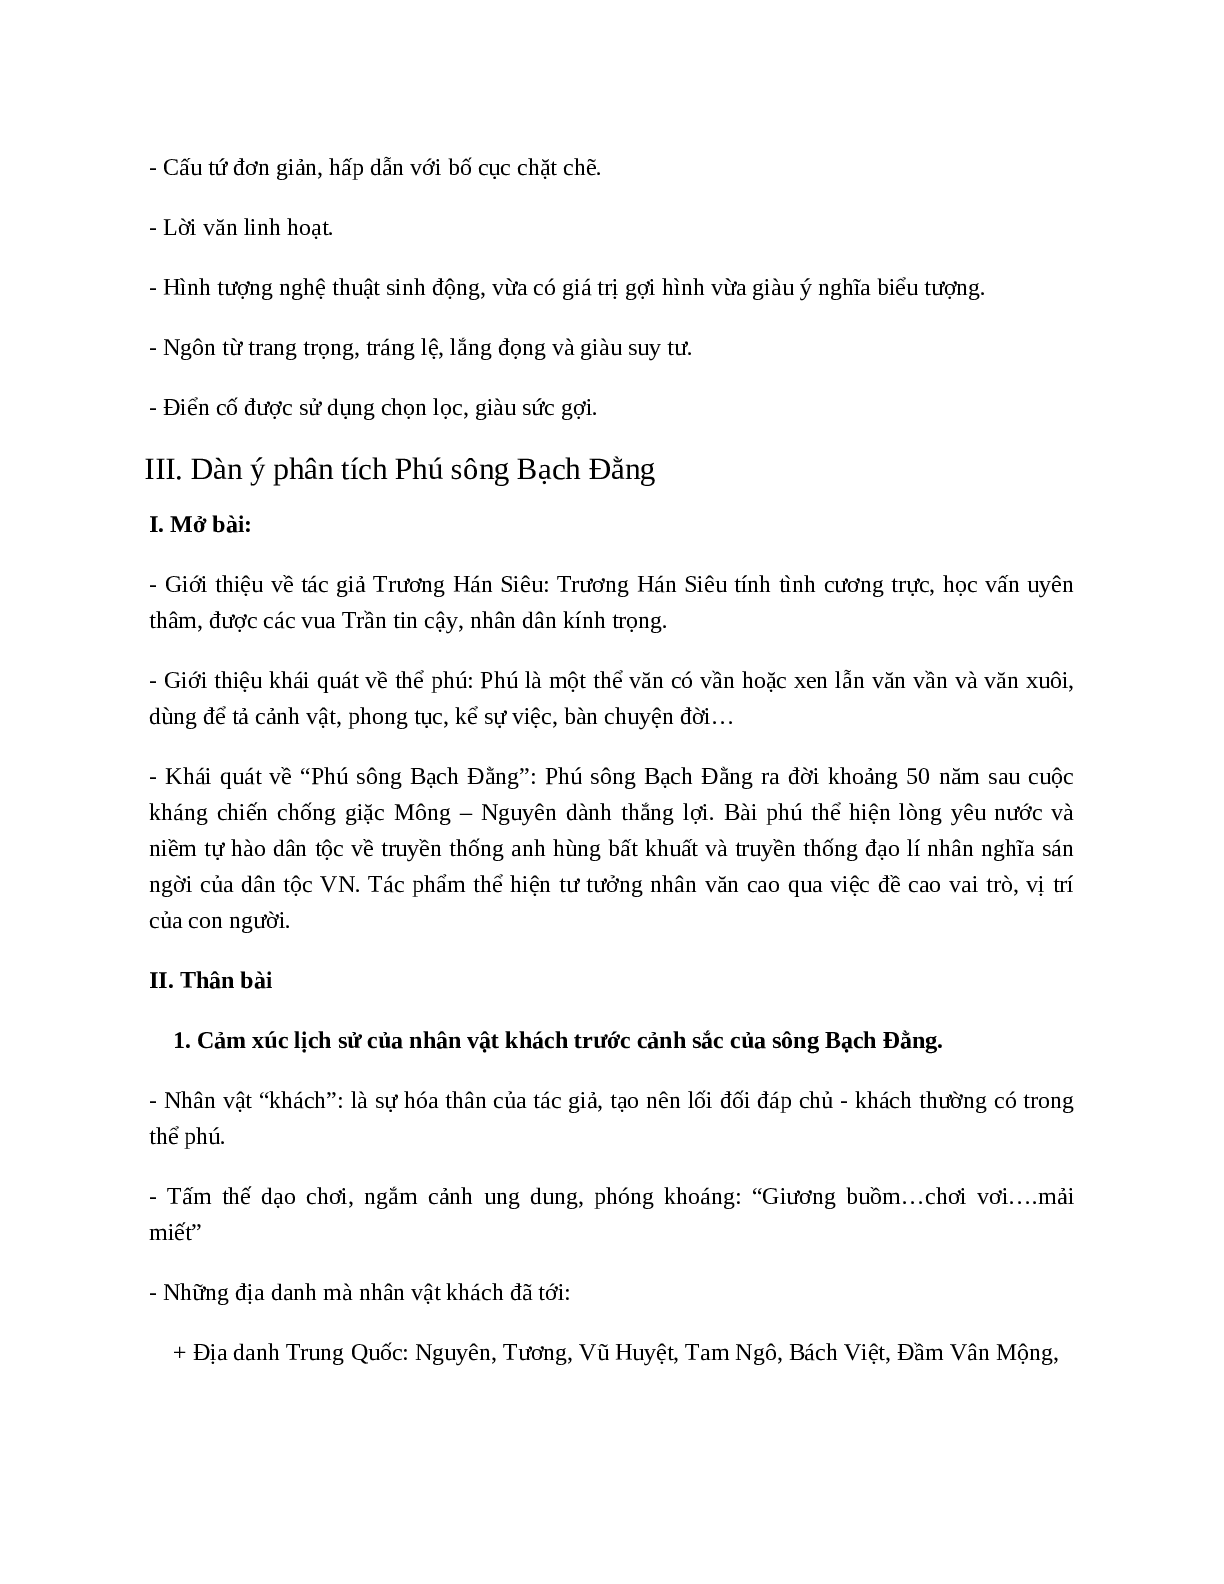 Phú sông Bạch Đằng (Trương Hán Siêu) - nội dung, dàn ý phân tích, bố cục, tóm tắt (trang 8)